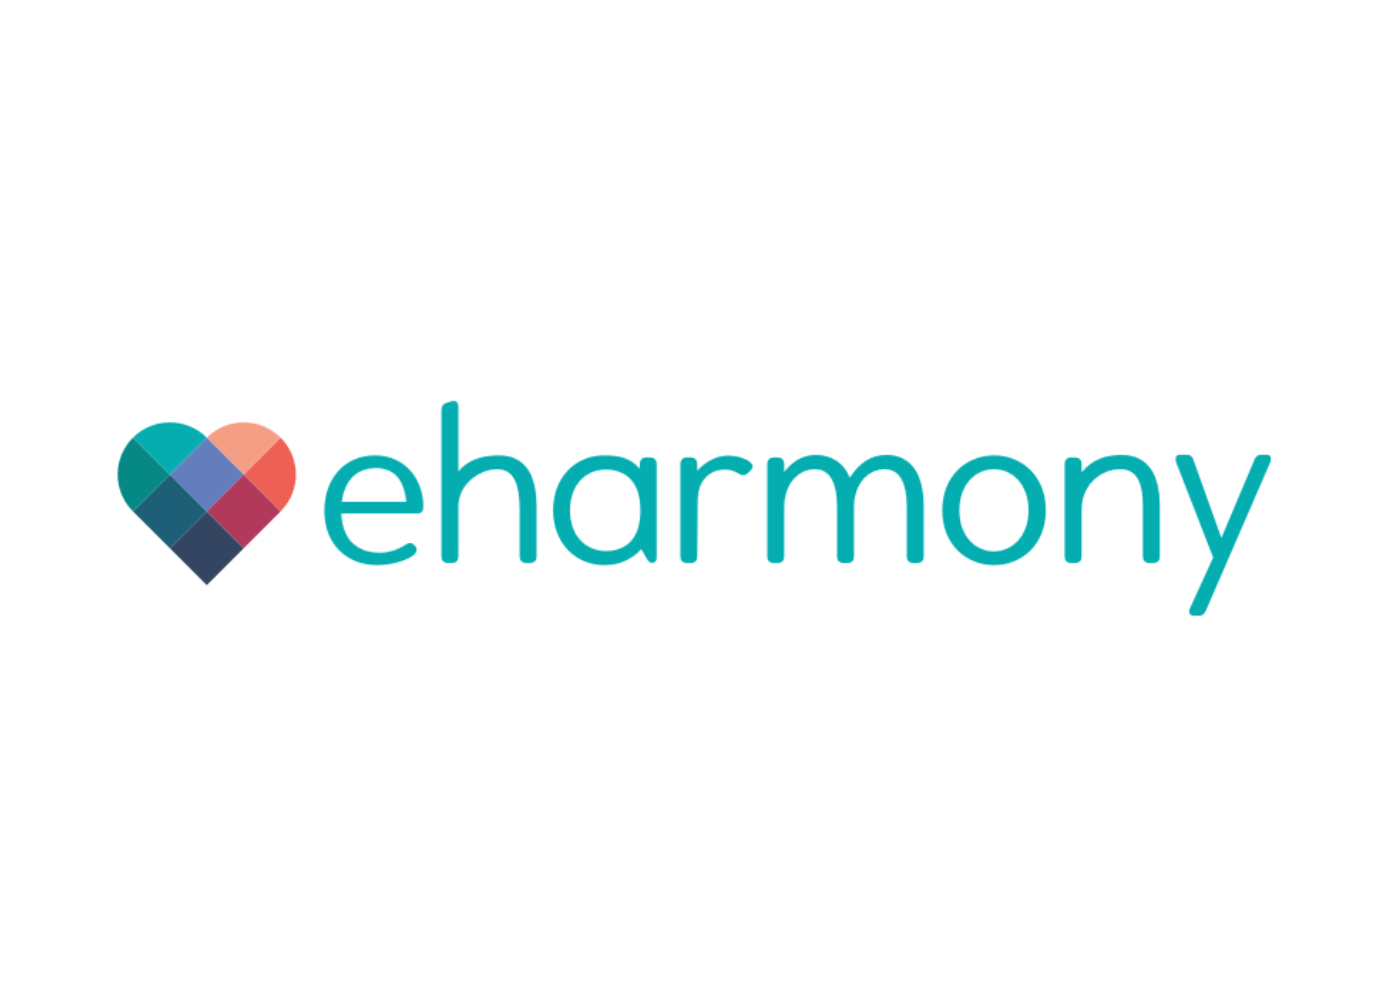 eHarmony Logo - eHarmony Reveals Brand New Logo Dating Insights